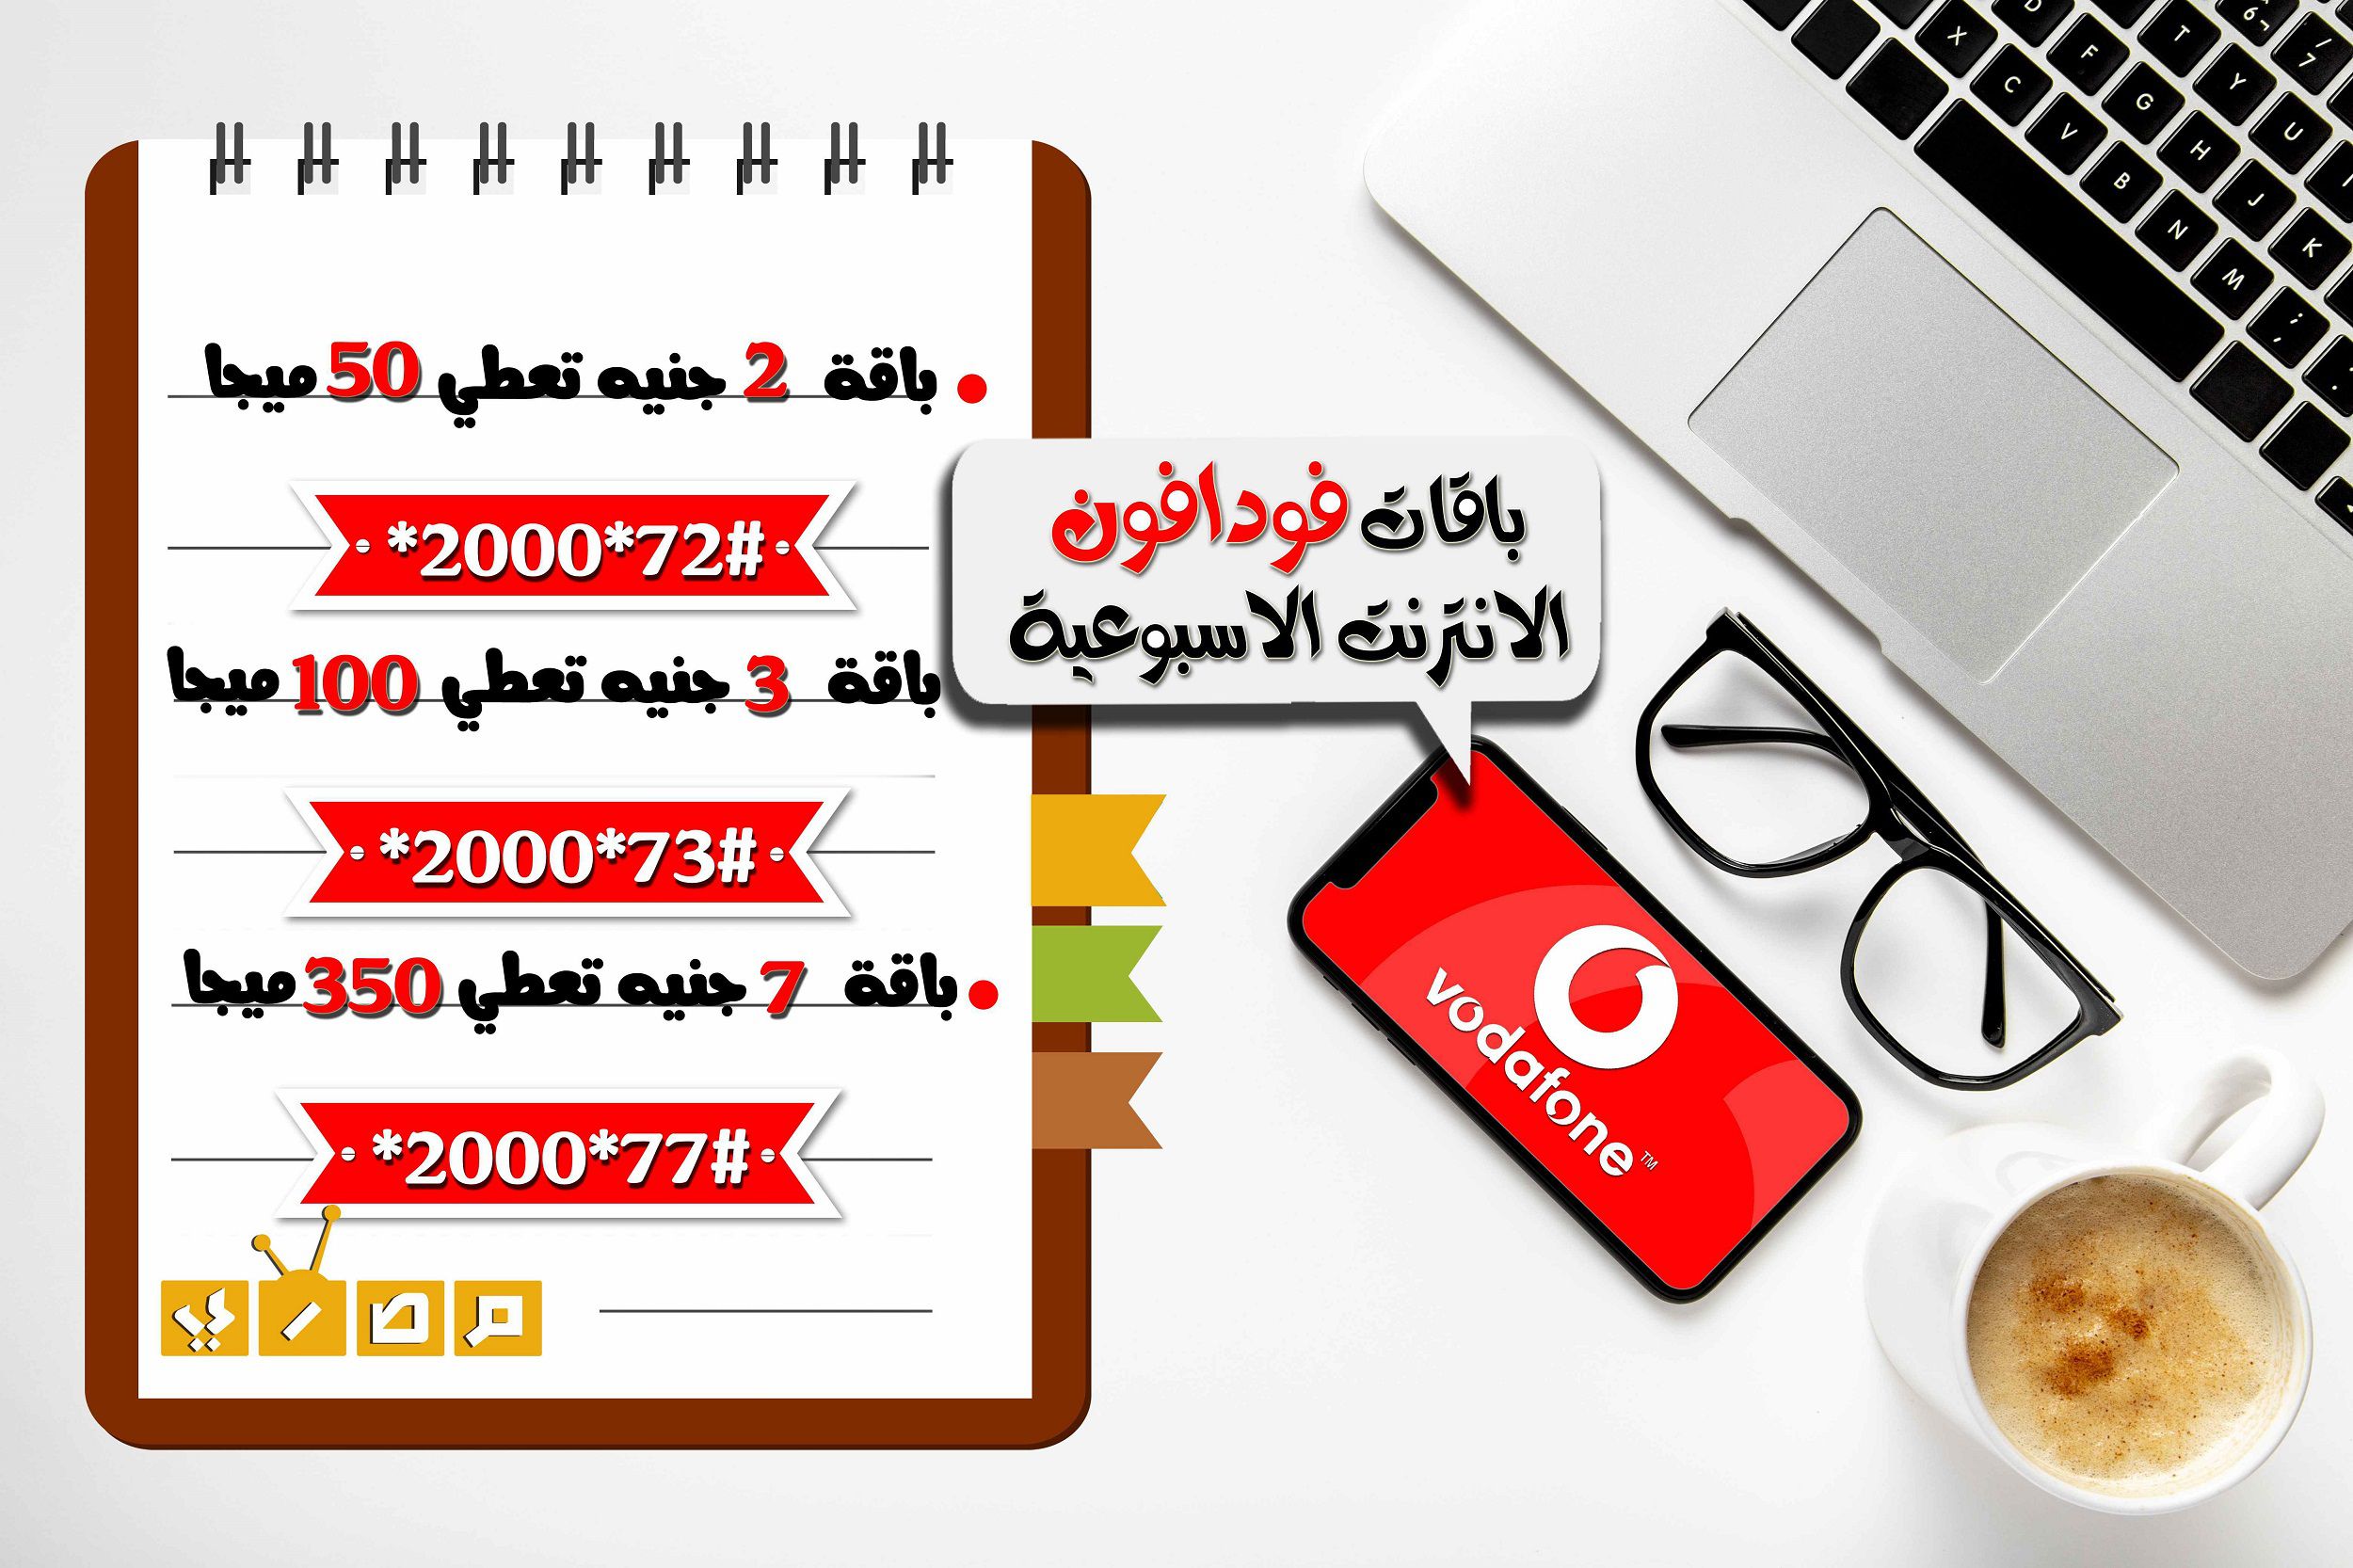  النت الاسبوعية فودافون - موقع مصري